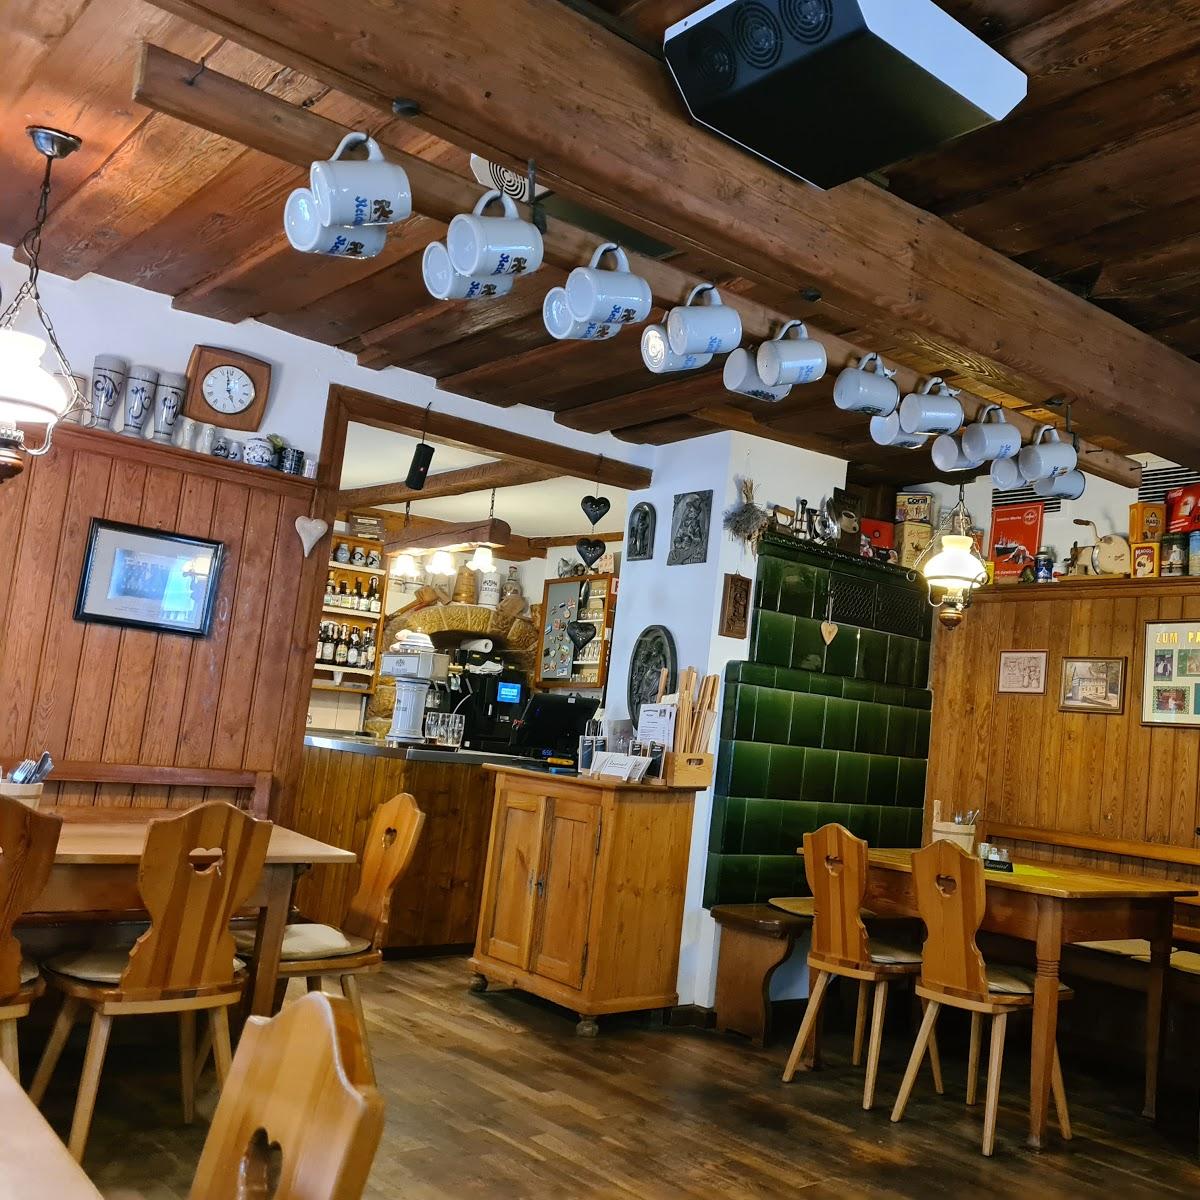 Restaurant "Pöhlmann